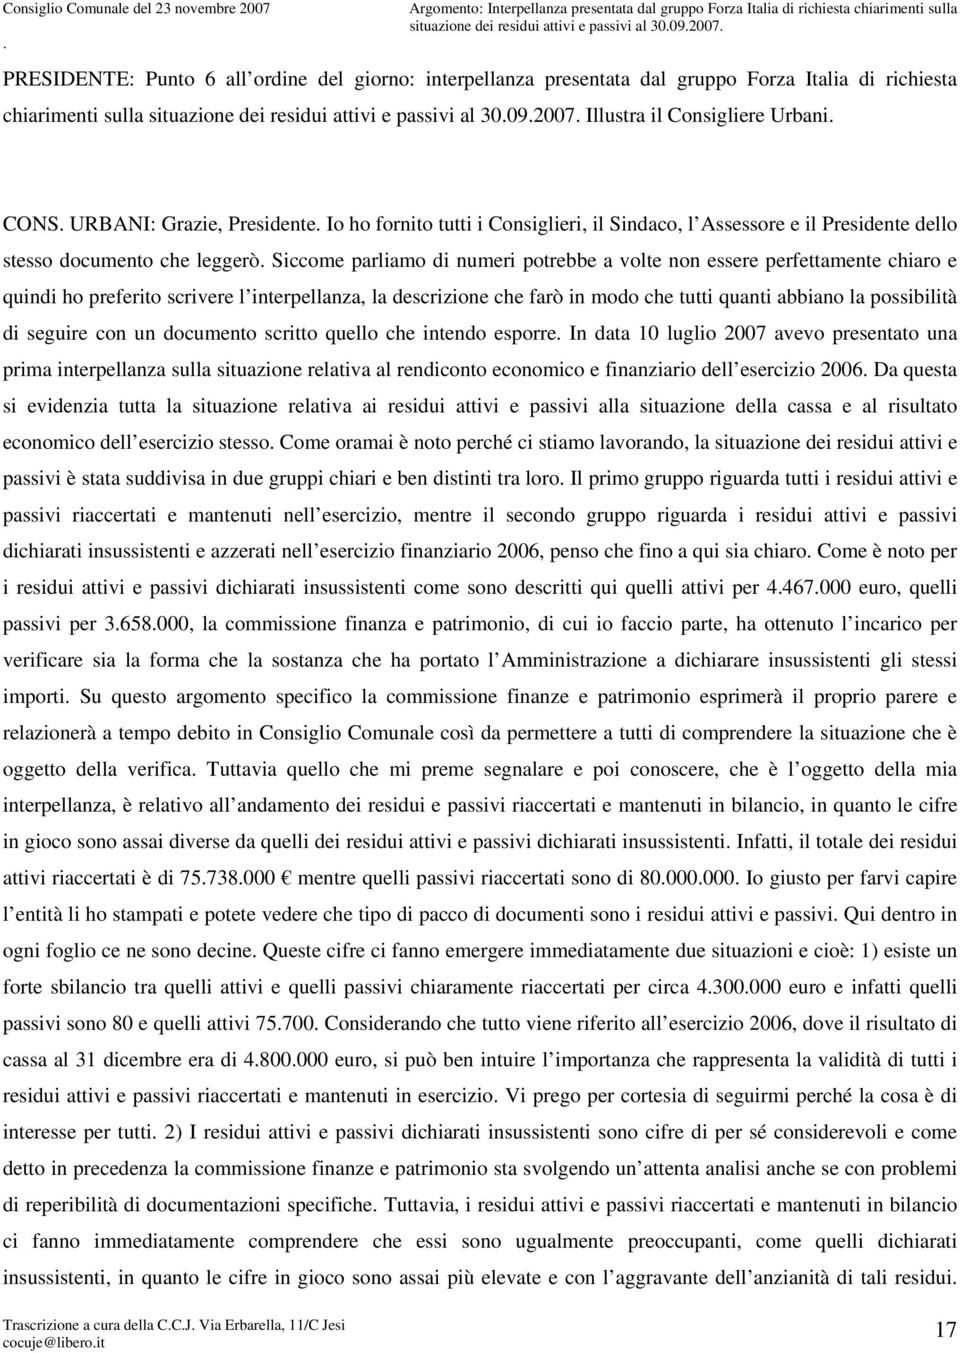 PRESIDENTE: Punto 6 all ordine del giorno: interpellanza presentata dal gruppo Forza Italia di richiesta chiarimenti sulla situazione dei residui attivi e passivi al 30.09.2007.